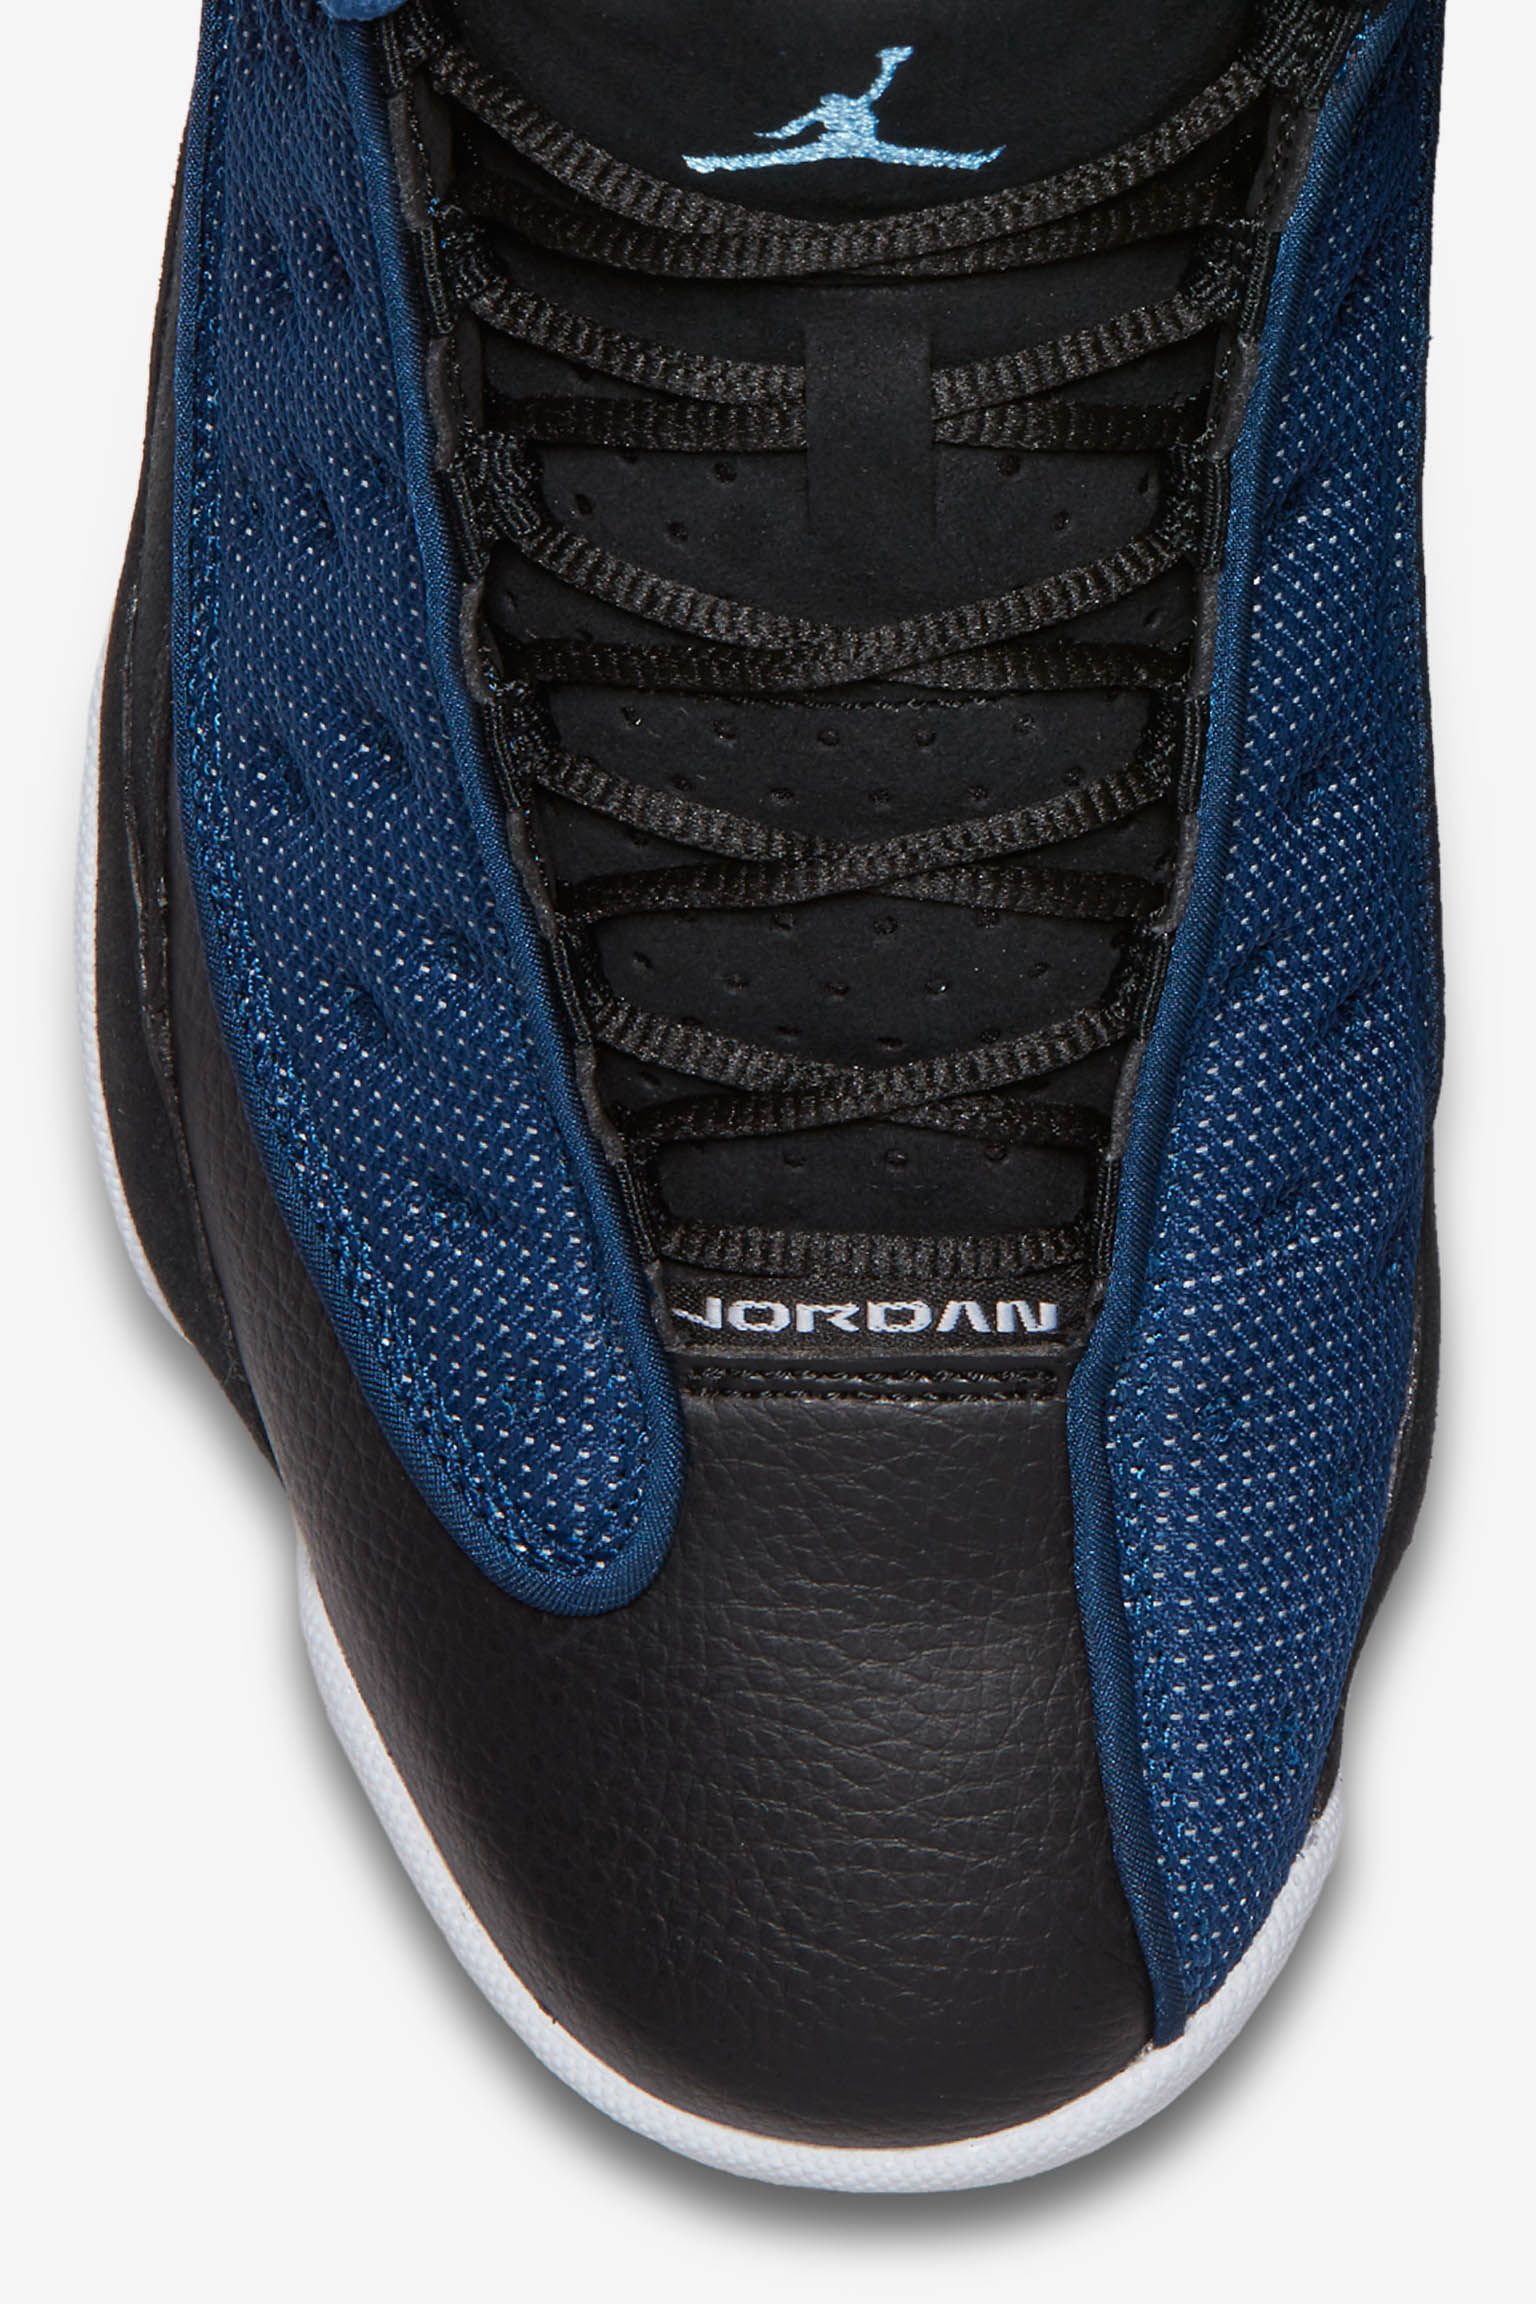 SALEOFF Authentic Shoes - Air Jordan 13 Retro Brave Blue - USALast